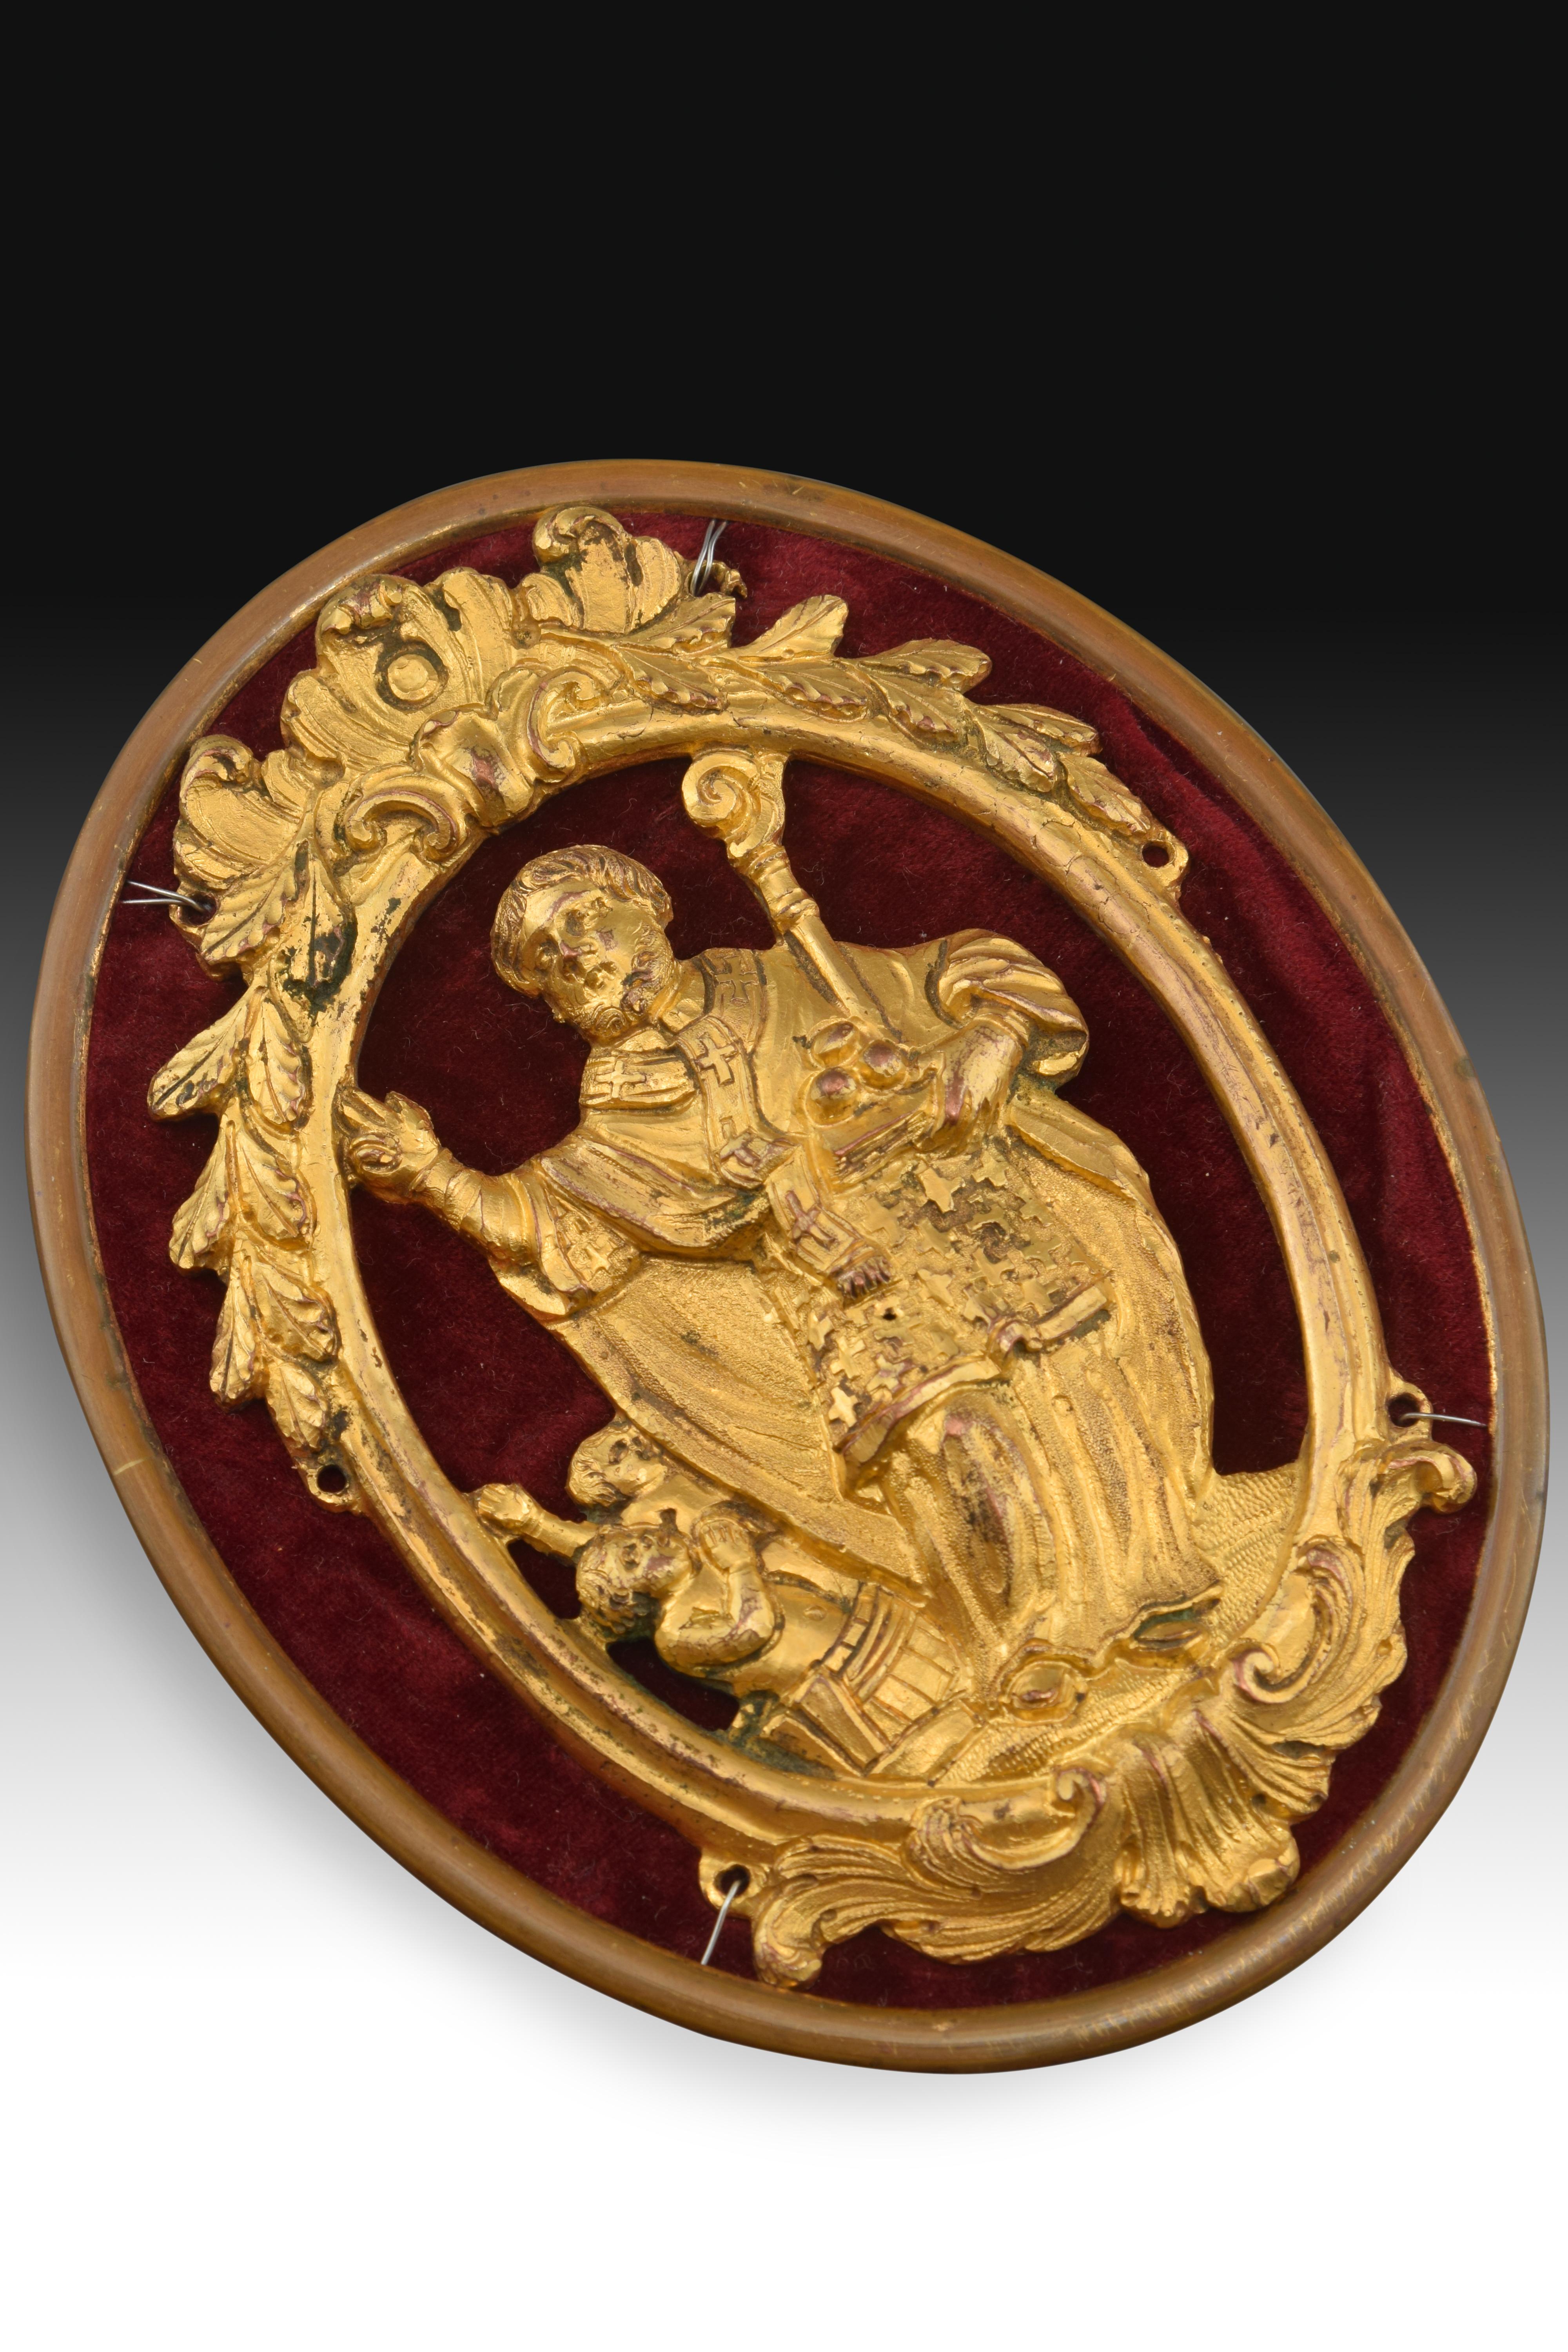 St. Nikolaus Medaille auf Träger. Vergoldete Bronze, Textil, Metall, 18. Jahrhundert.
Goldene Bronze Medaille auf einem Träger von Drähten, die einen ovalen Rahmen mit einer Spitze mit pflanzlichen Elementen in symmetrischer Zusammensetzung und